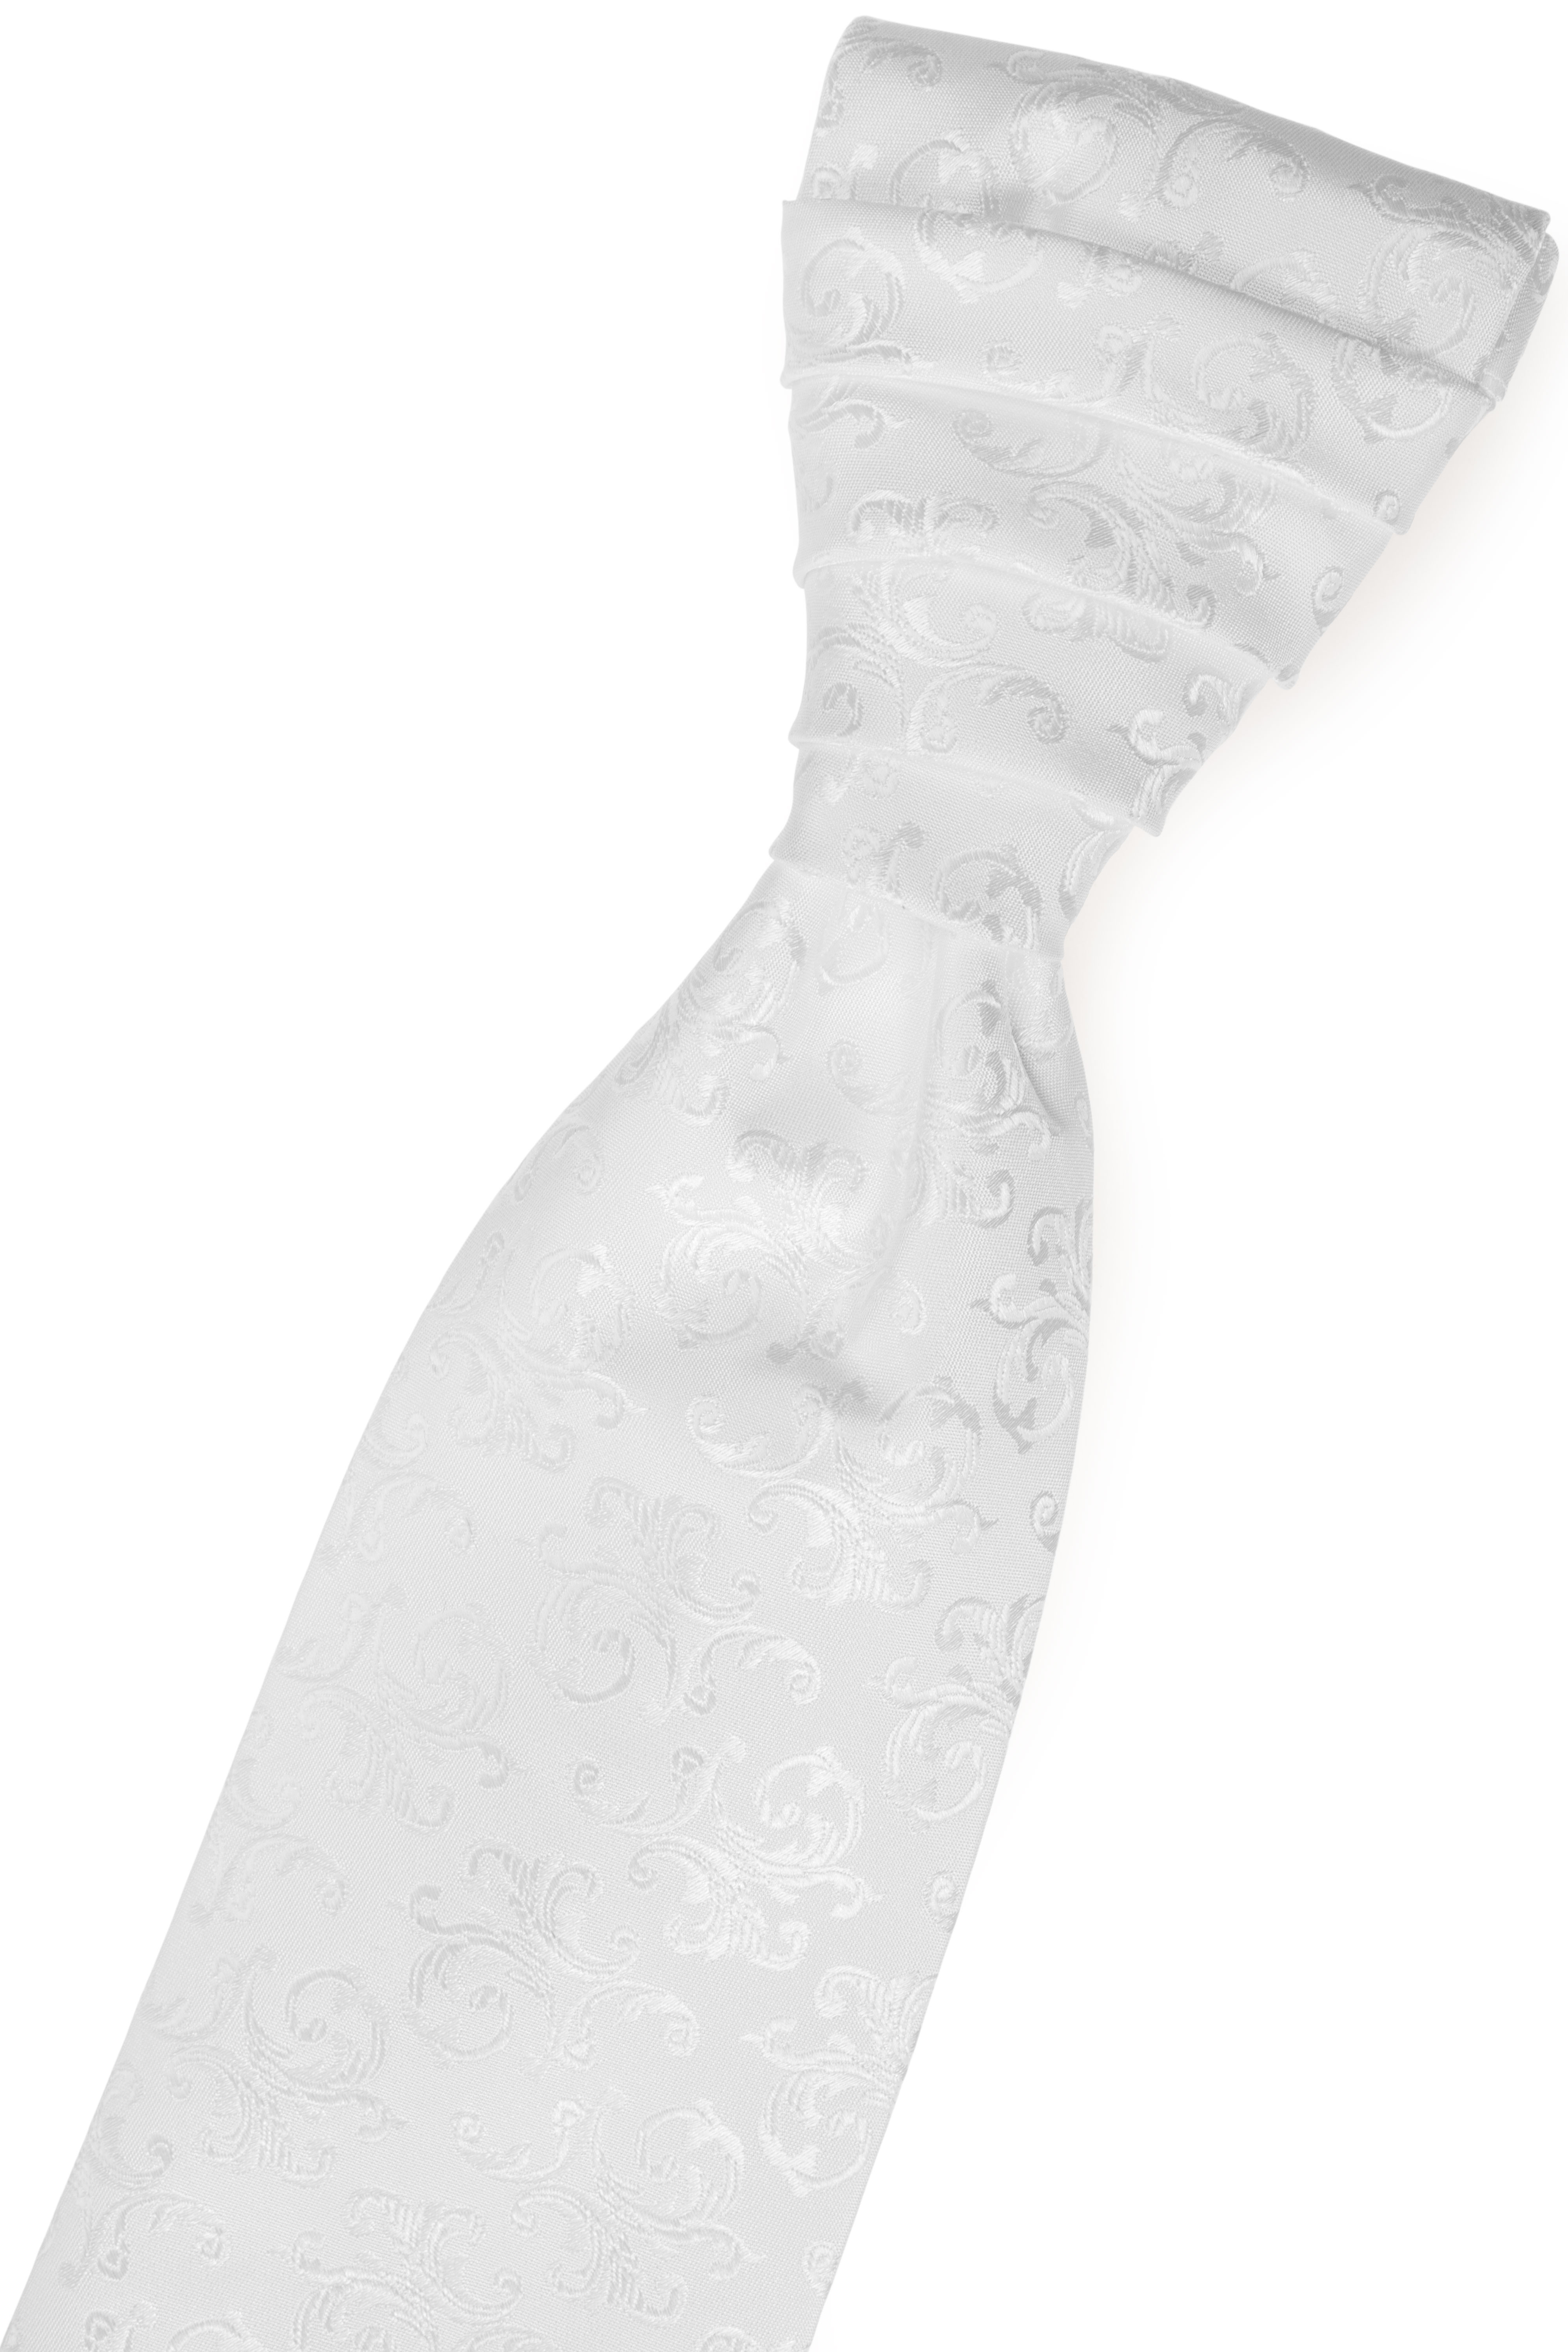 Svatební kravata Avantgard PREMIUM Bílá 577-56-0 - GLAMI.cz